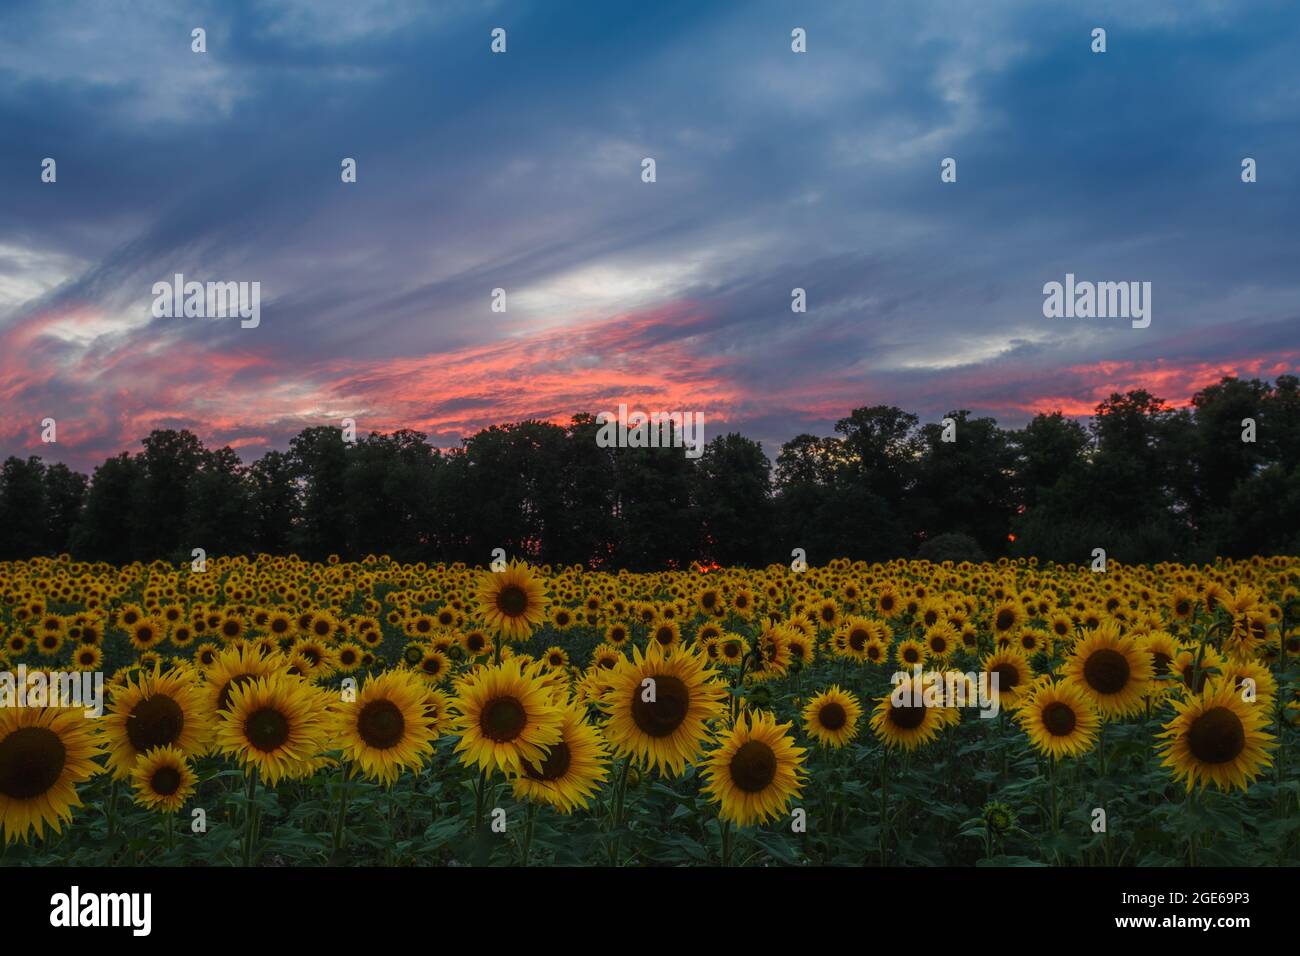 Coucher de soleil derrière les tournesols sur les champs à Harpenden, Angleterre Banque D'Images